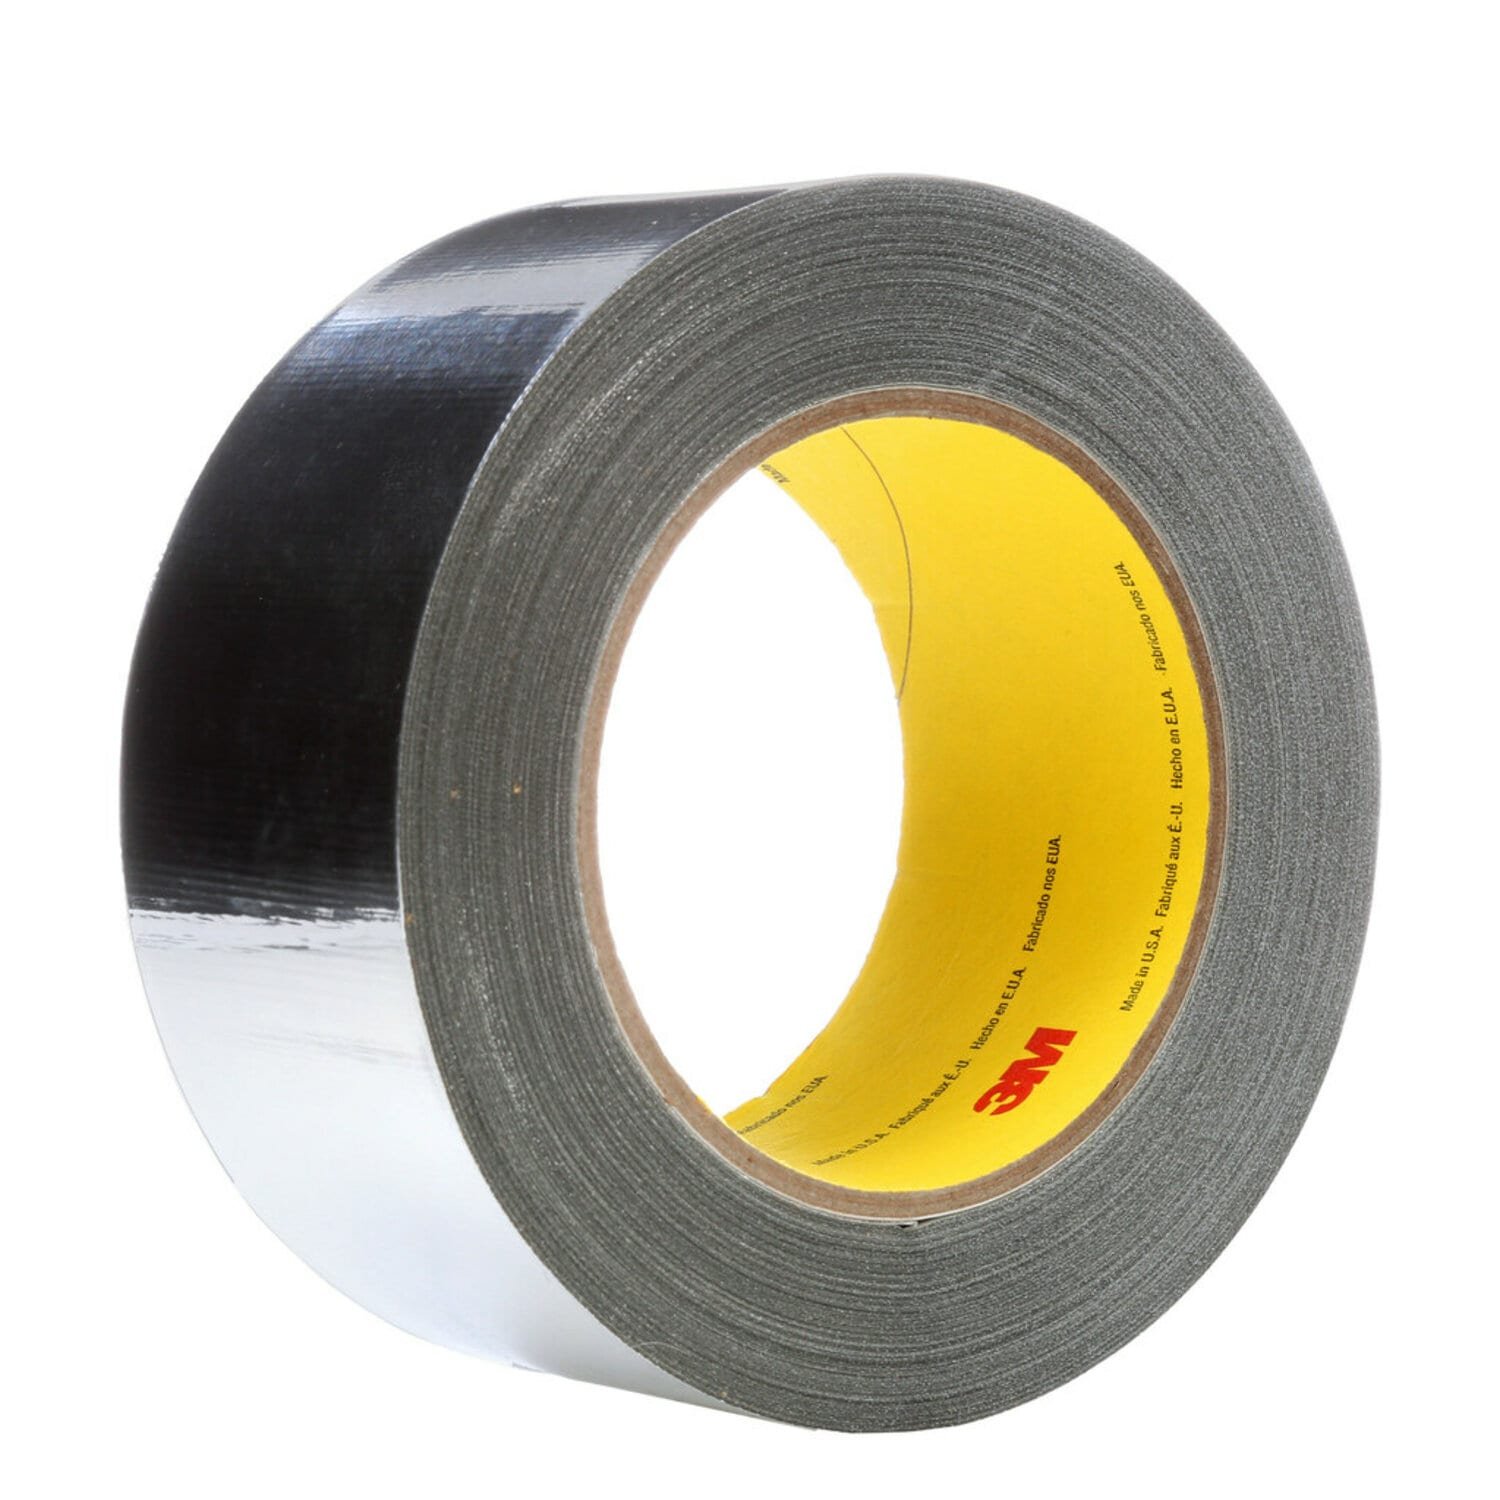 7100035736 - 3M High Temperature Aluminum Foil Glass Cloth Tape 363, Silver, 50 mm x
33 m, 7.3 mil, 4 rolls per case